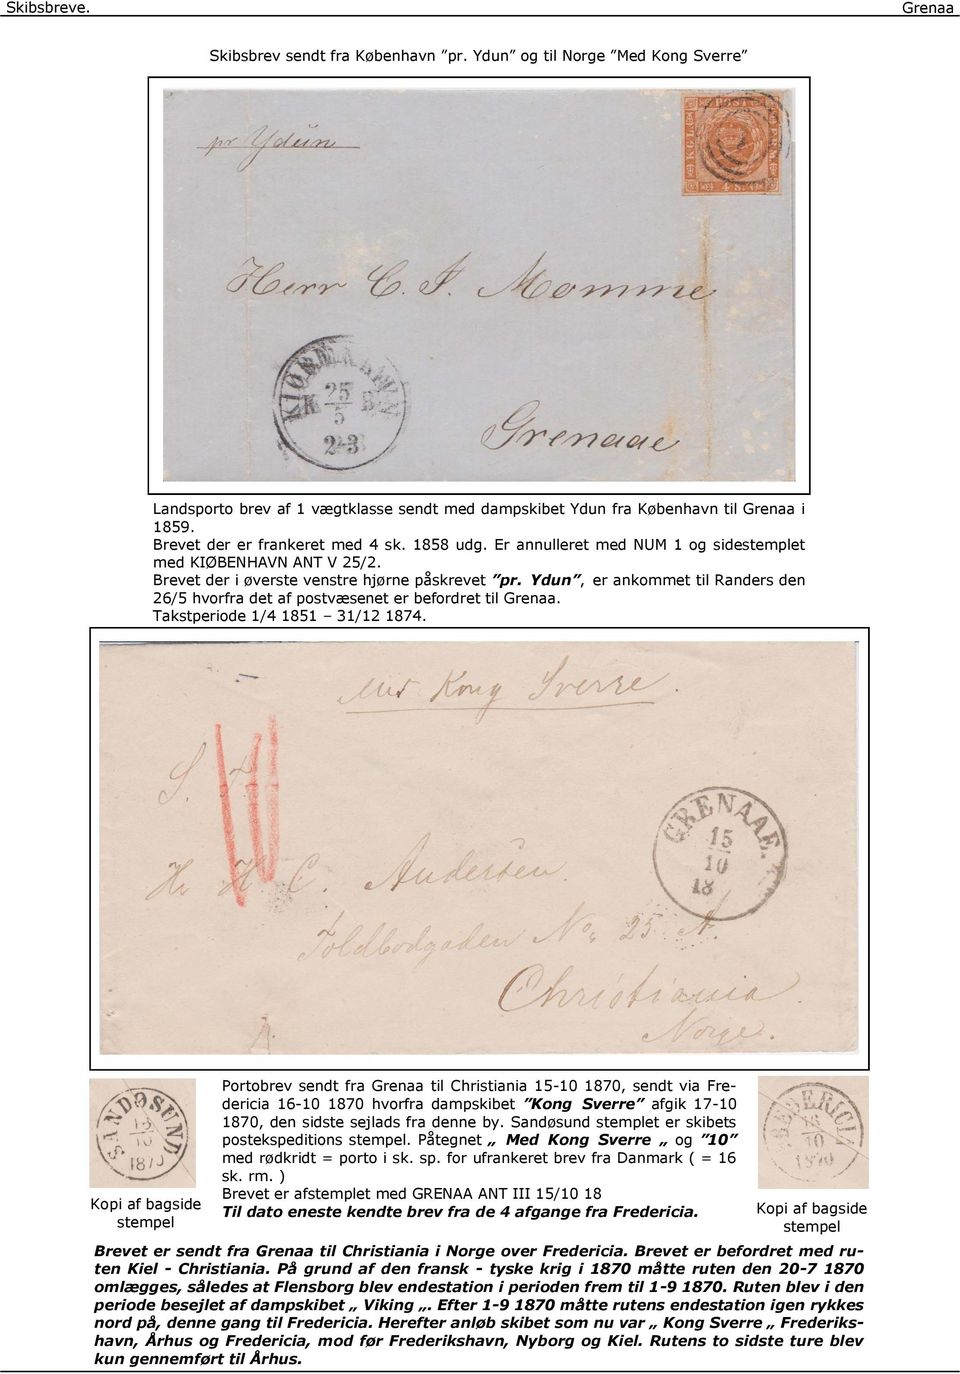 Ydun, er ankommet til Randers den 26/5 hvorfra det af postvæsenet er befordret til. Takstperiode 1/4 1851 31/12 1874.